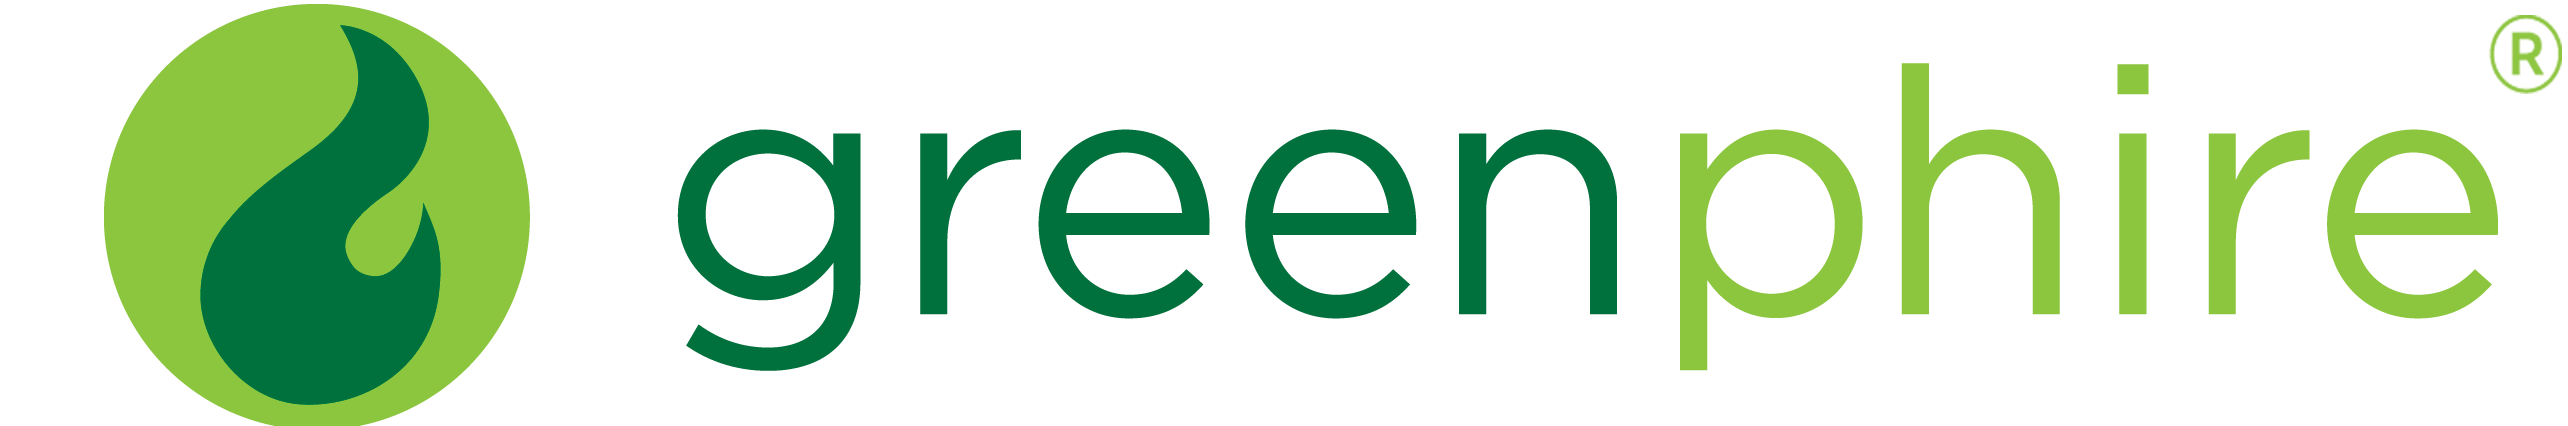 greenphire logo